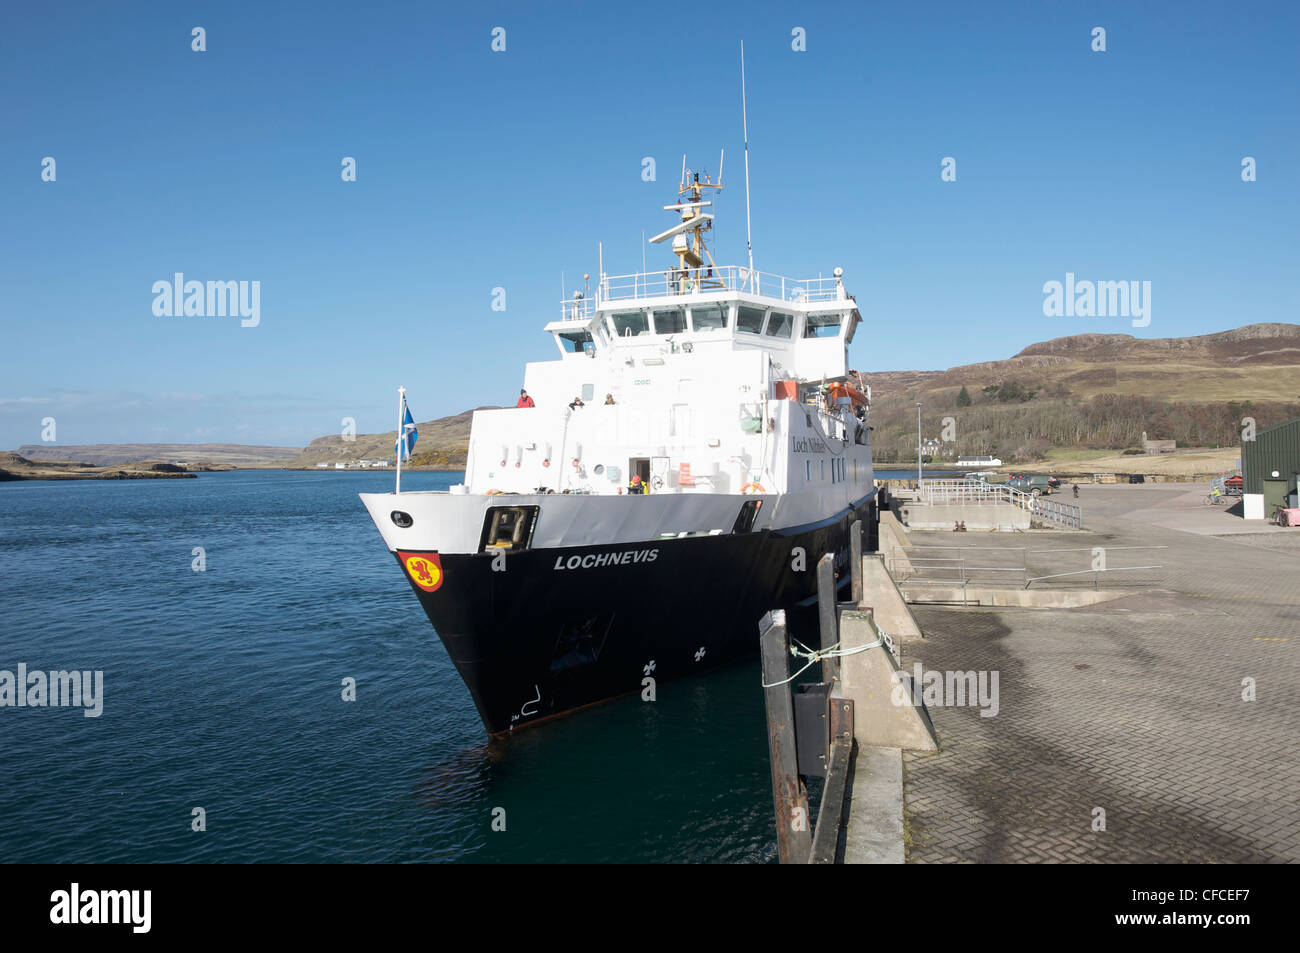 Ferry Caledonian MacBrayne Loch Nevis avec le dock, Canna, Hébrides intérieures, Ecosse Banque D'Images